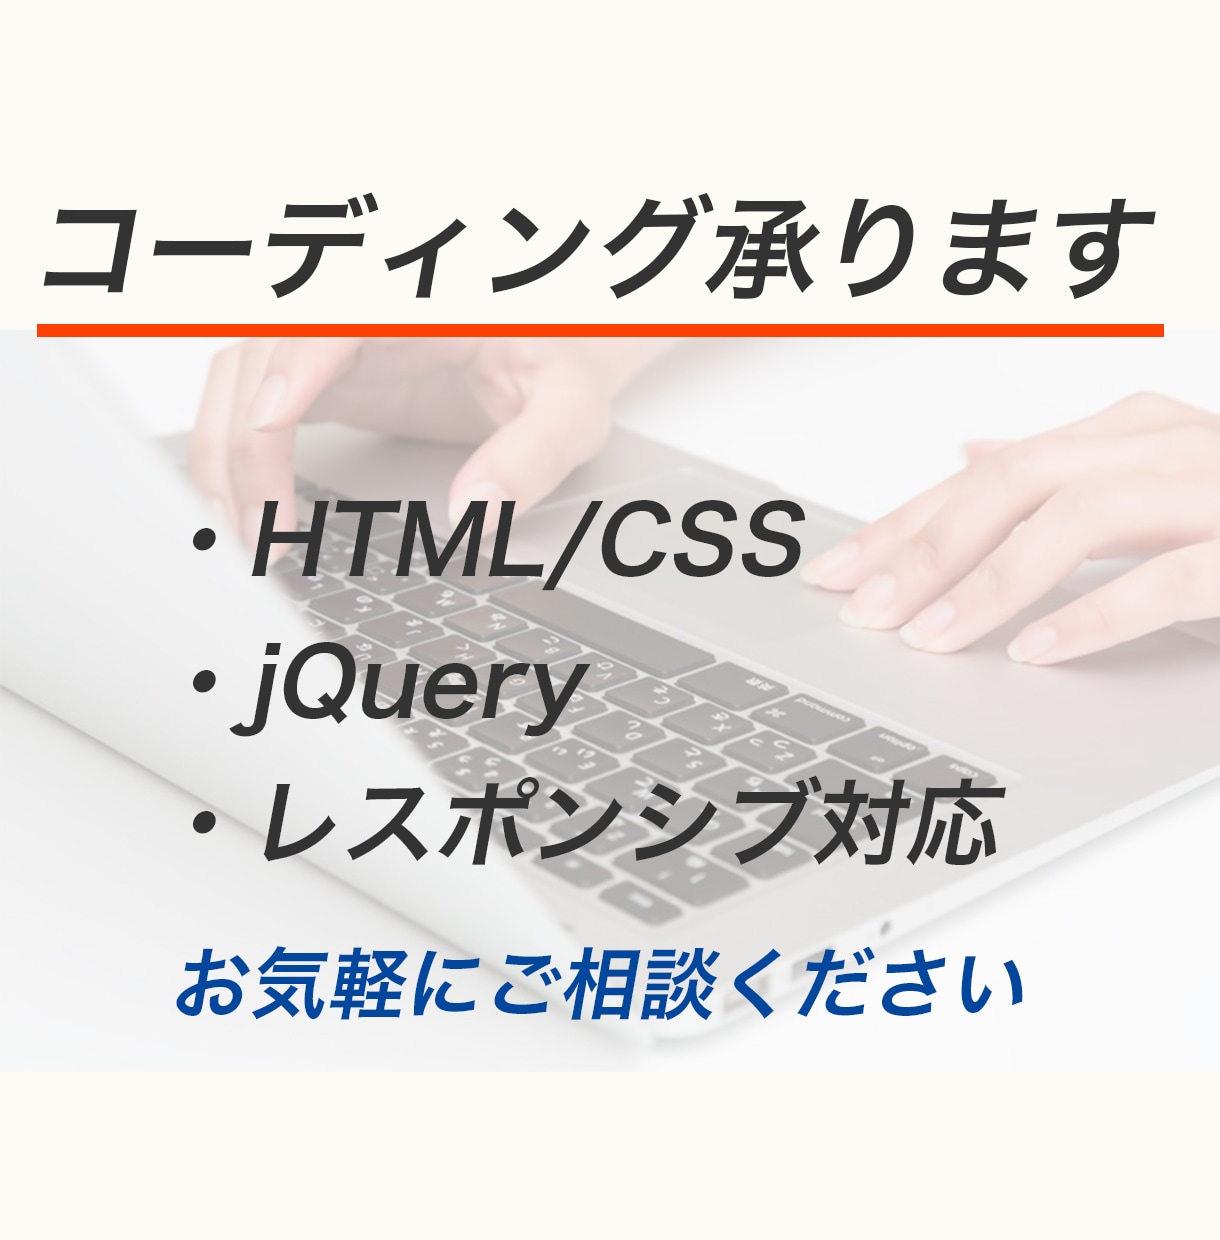 HTML/CSSのコーディング承ります jQuery実装・レスポンシブ対応可能です。 イメージ1